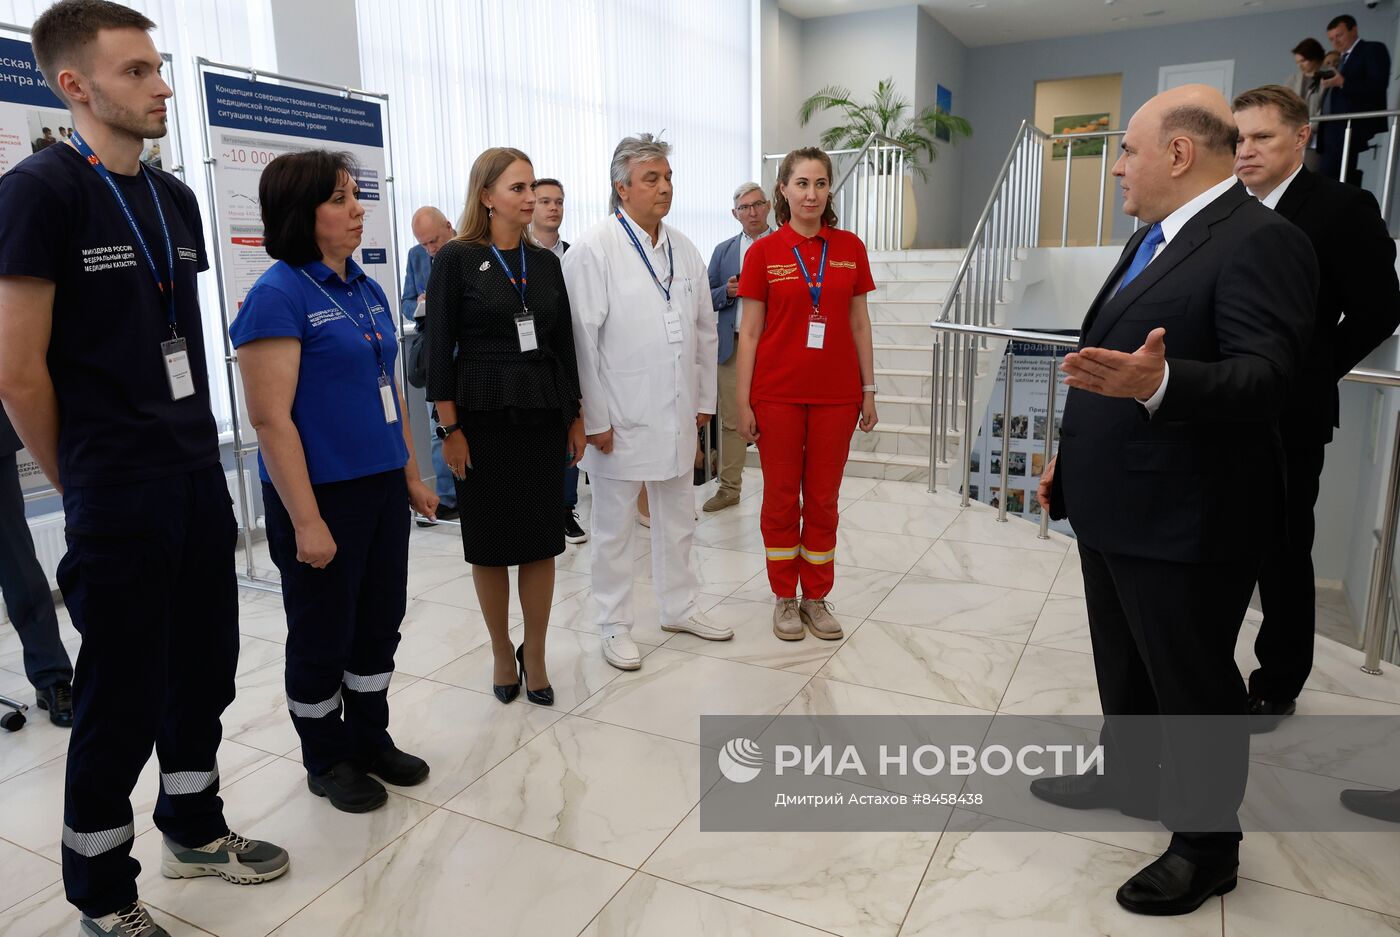 Премьер-министр РФ М. Мишустин посетил Федеральный центр медицины катастроф 